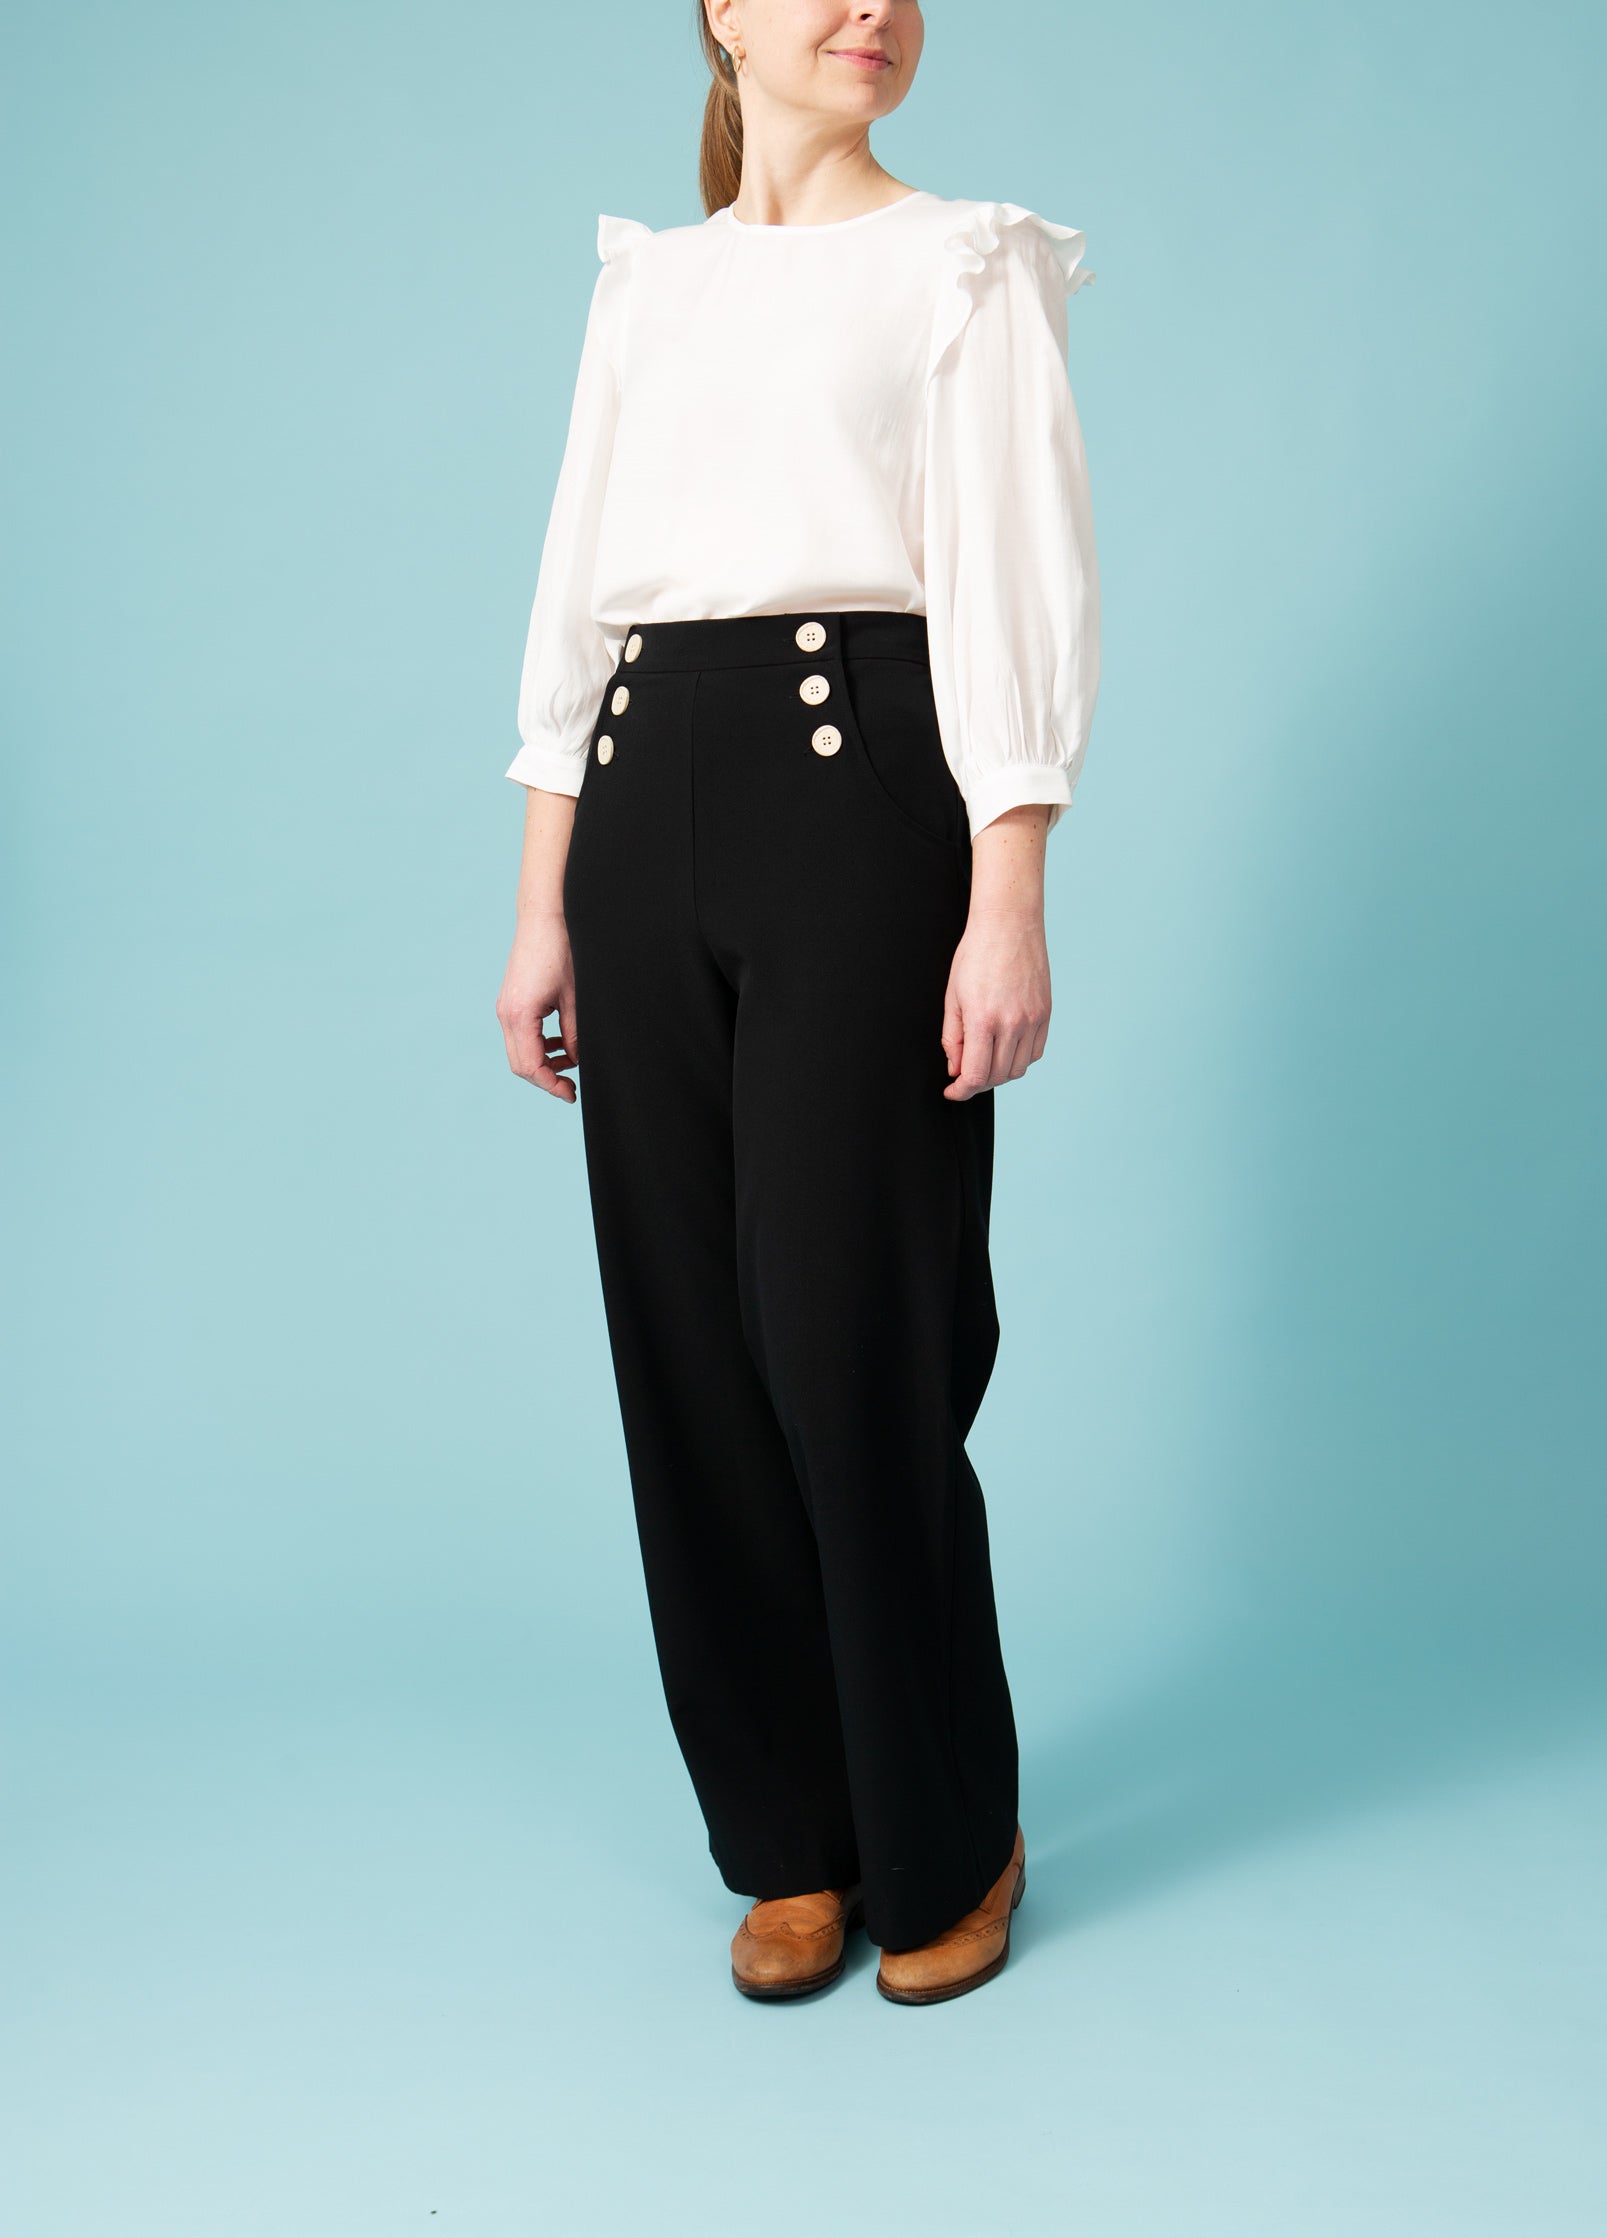 Sorte bukser høj talje og knapper i siden | Køb online | Pretty Retro – Dress the bird